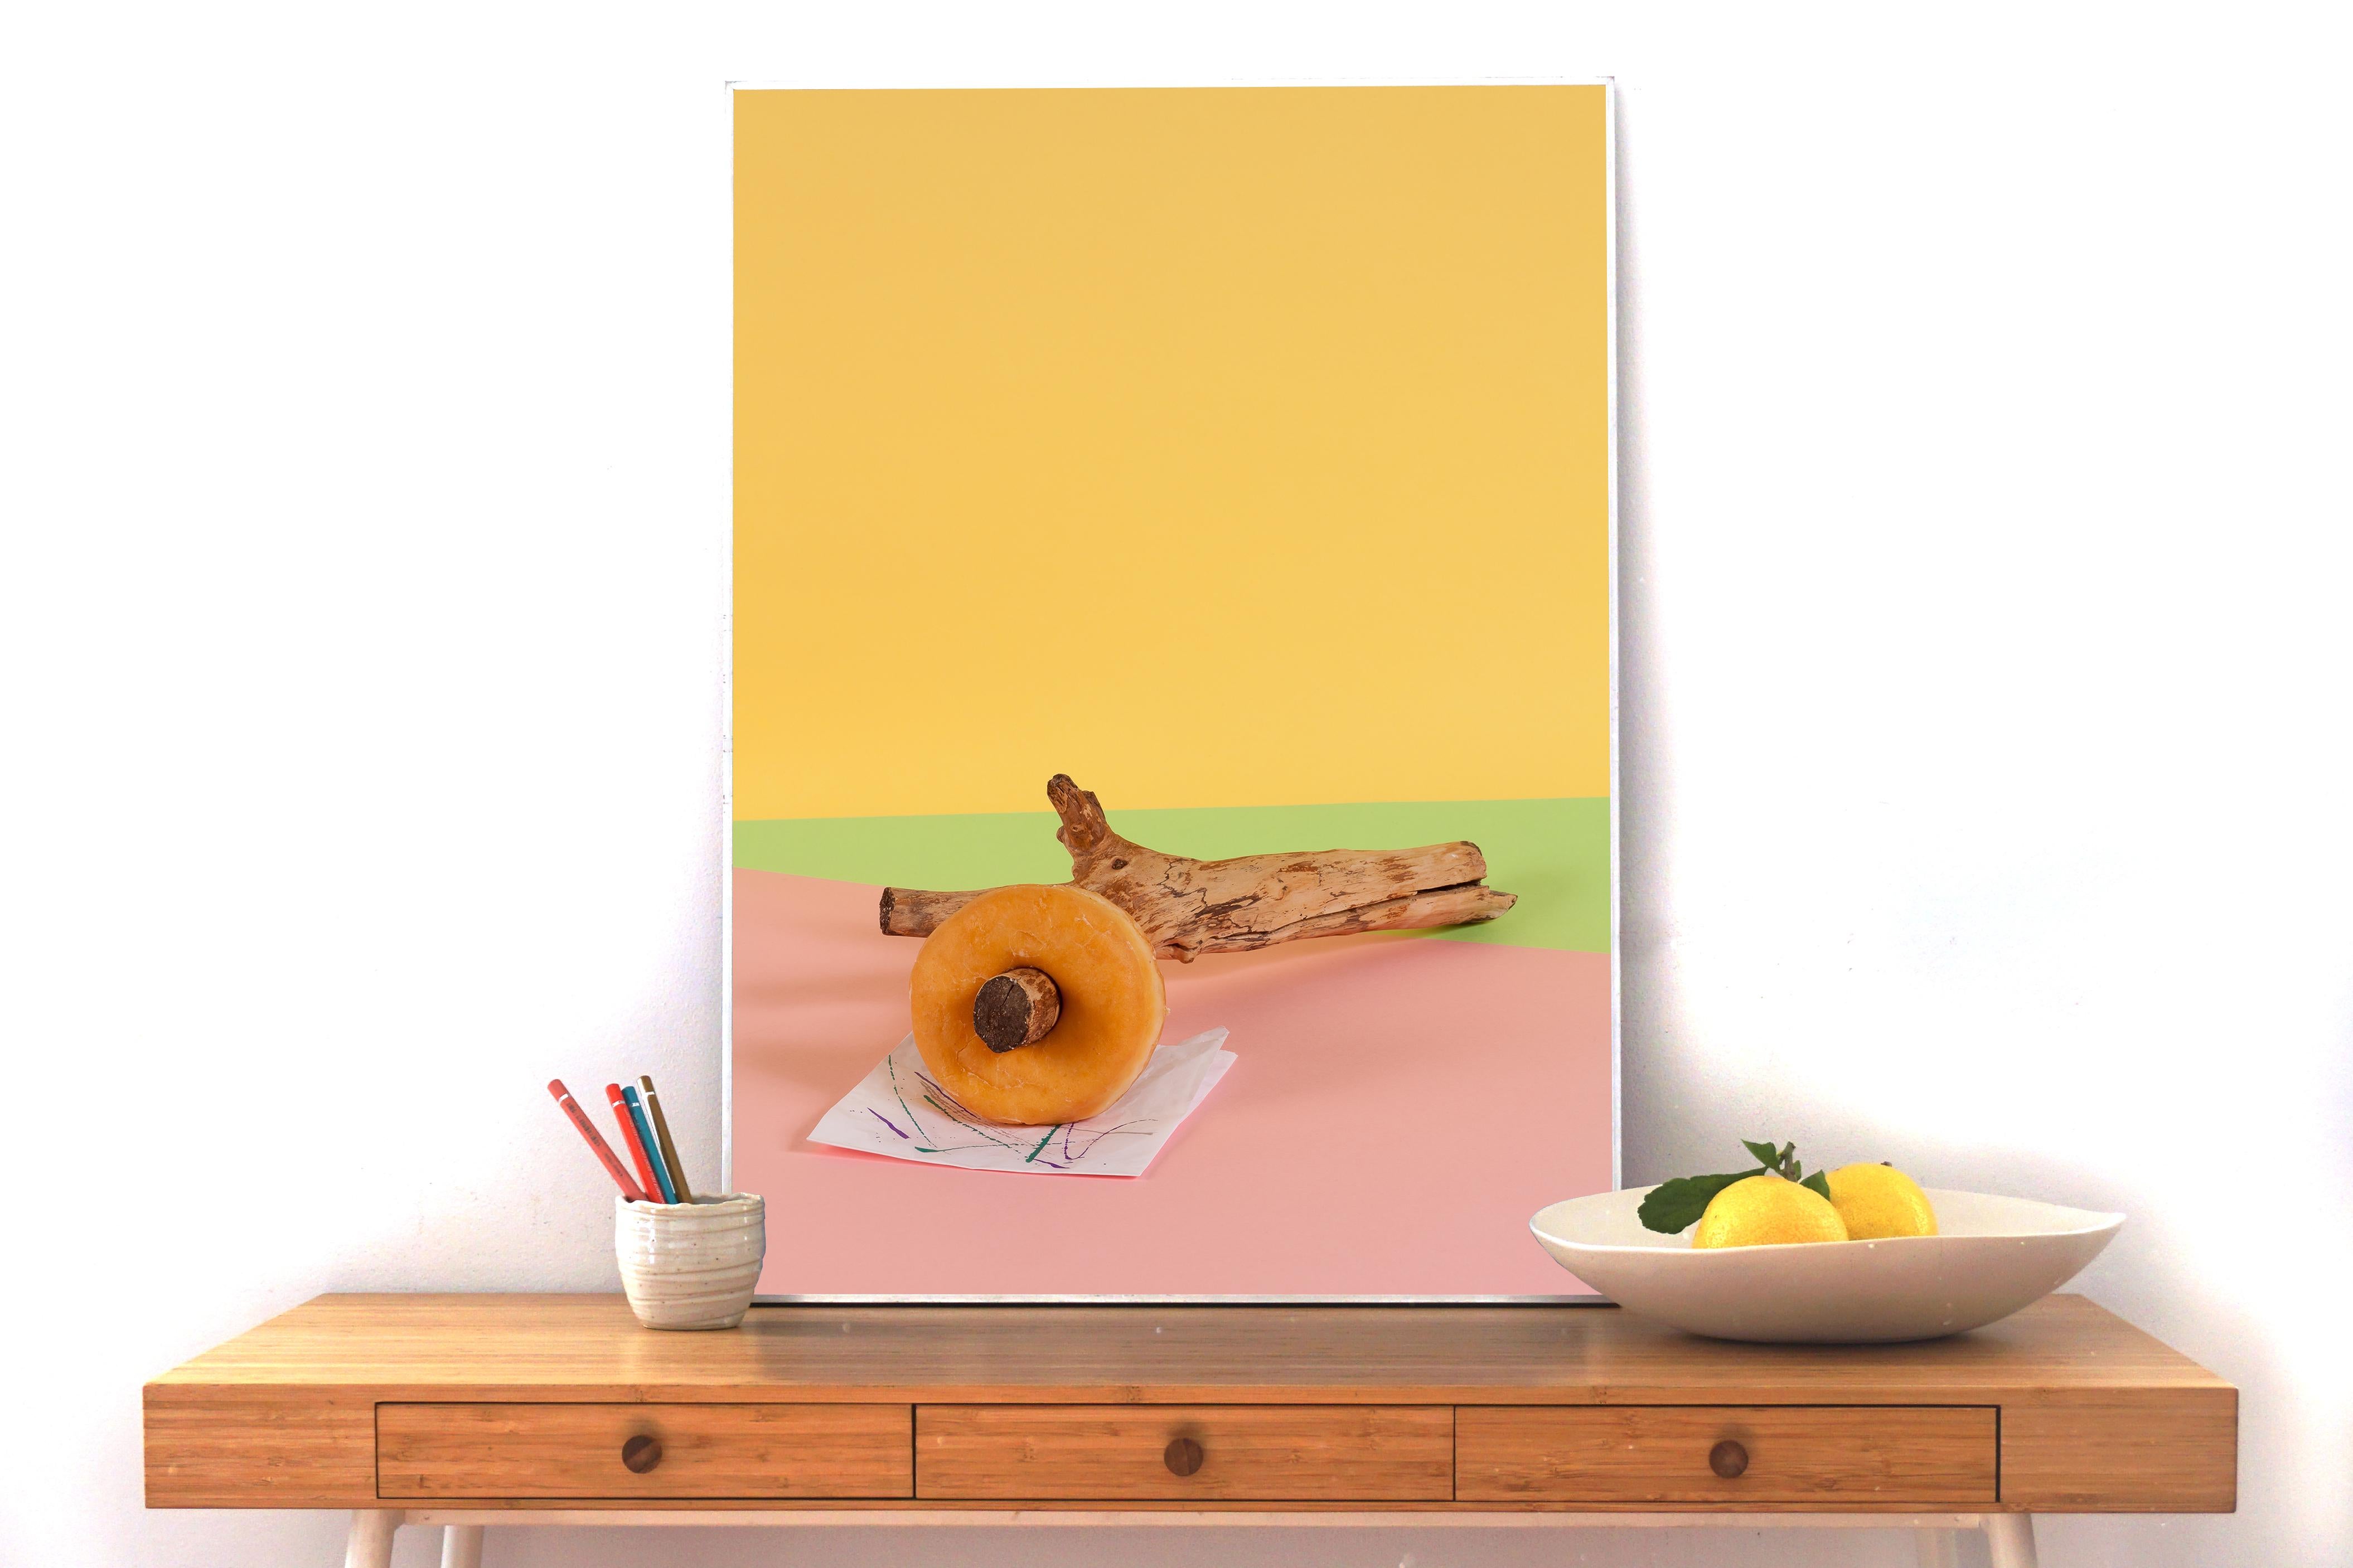 Sexy Nussbaum, Fast Food Zeitgenössisches Stillleben auf gelbem Hintergrund, Gicle (Pop-Art), Print, von Ryan Rivadeneyra